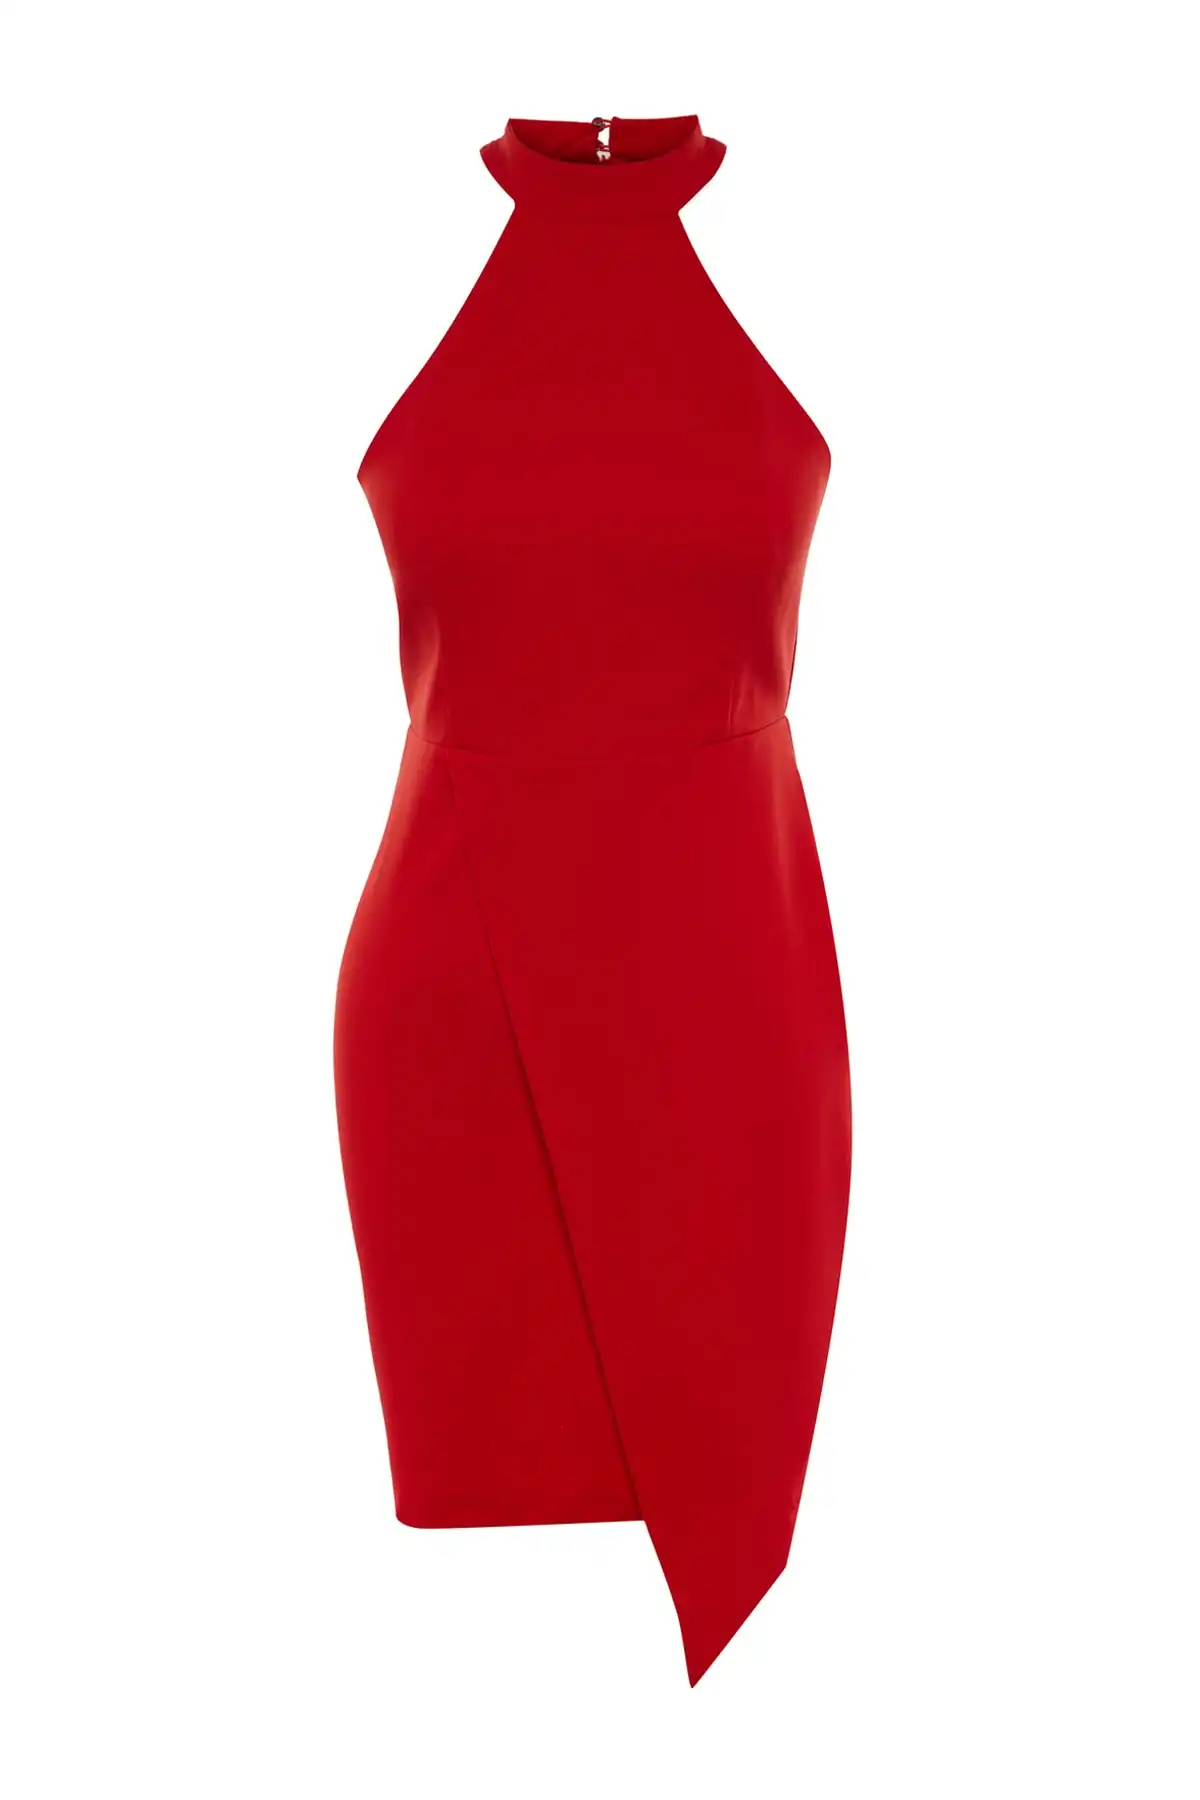 لباس شب شیک با آستر بافت قرمز TPRAW19BB0007 برند   TRENDYOLMİLLA به رنگ  قرمز در دسته لباس مجلسی هالتر